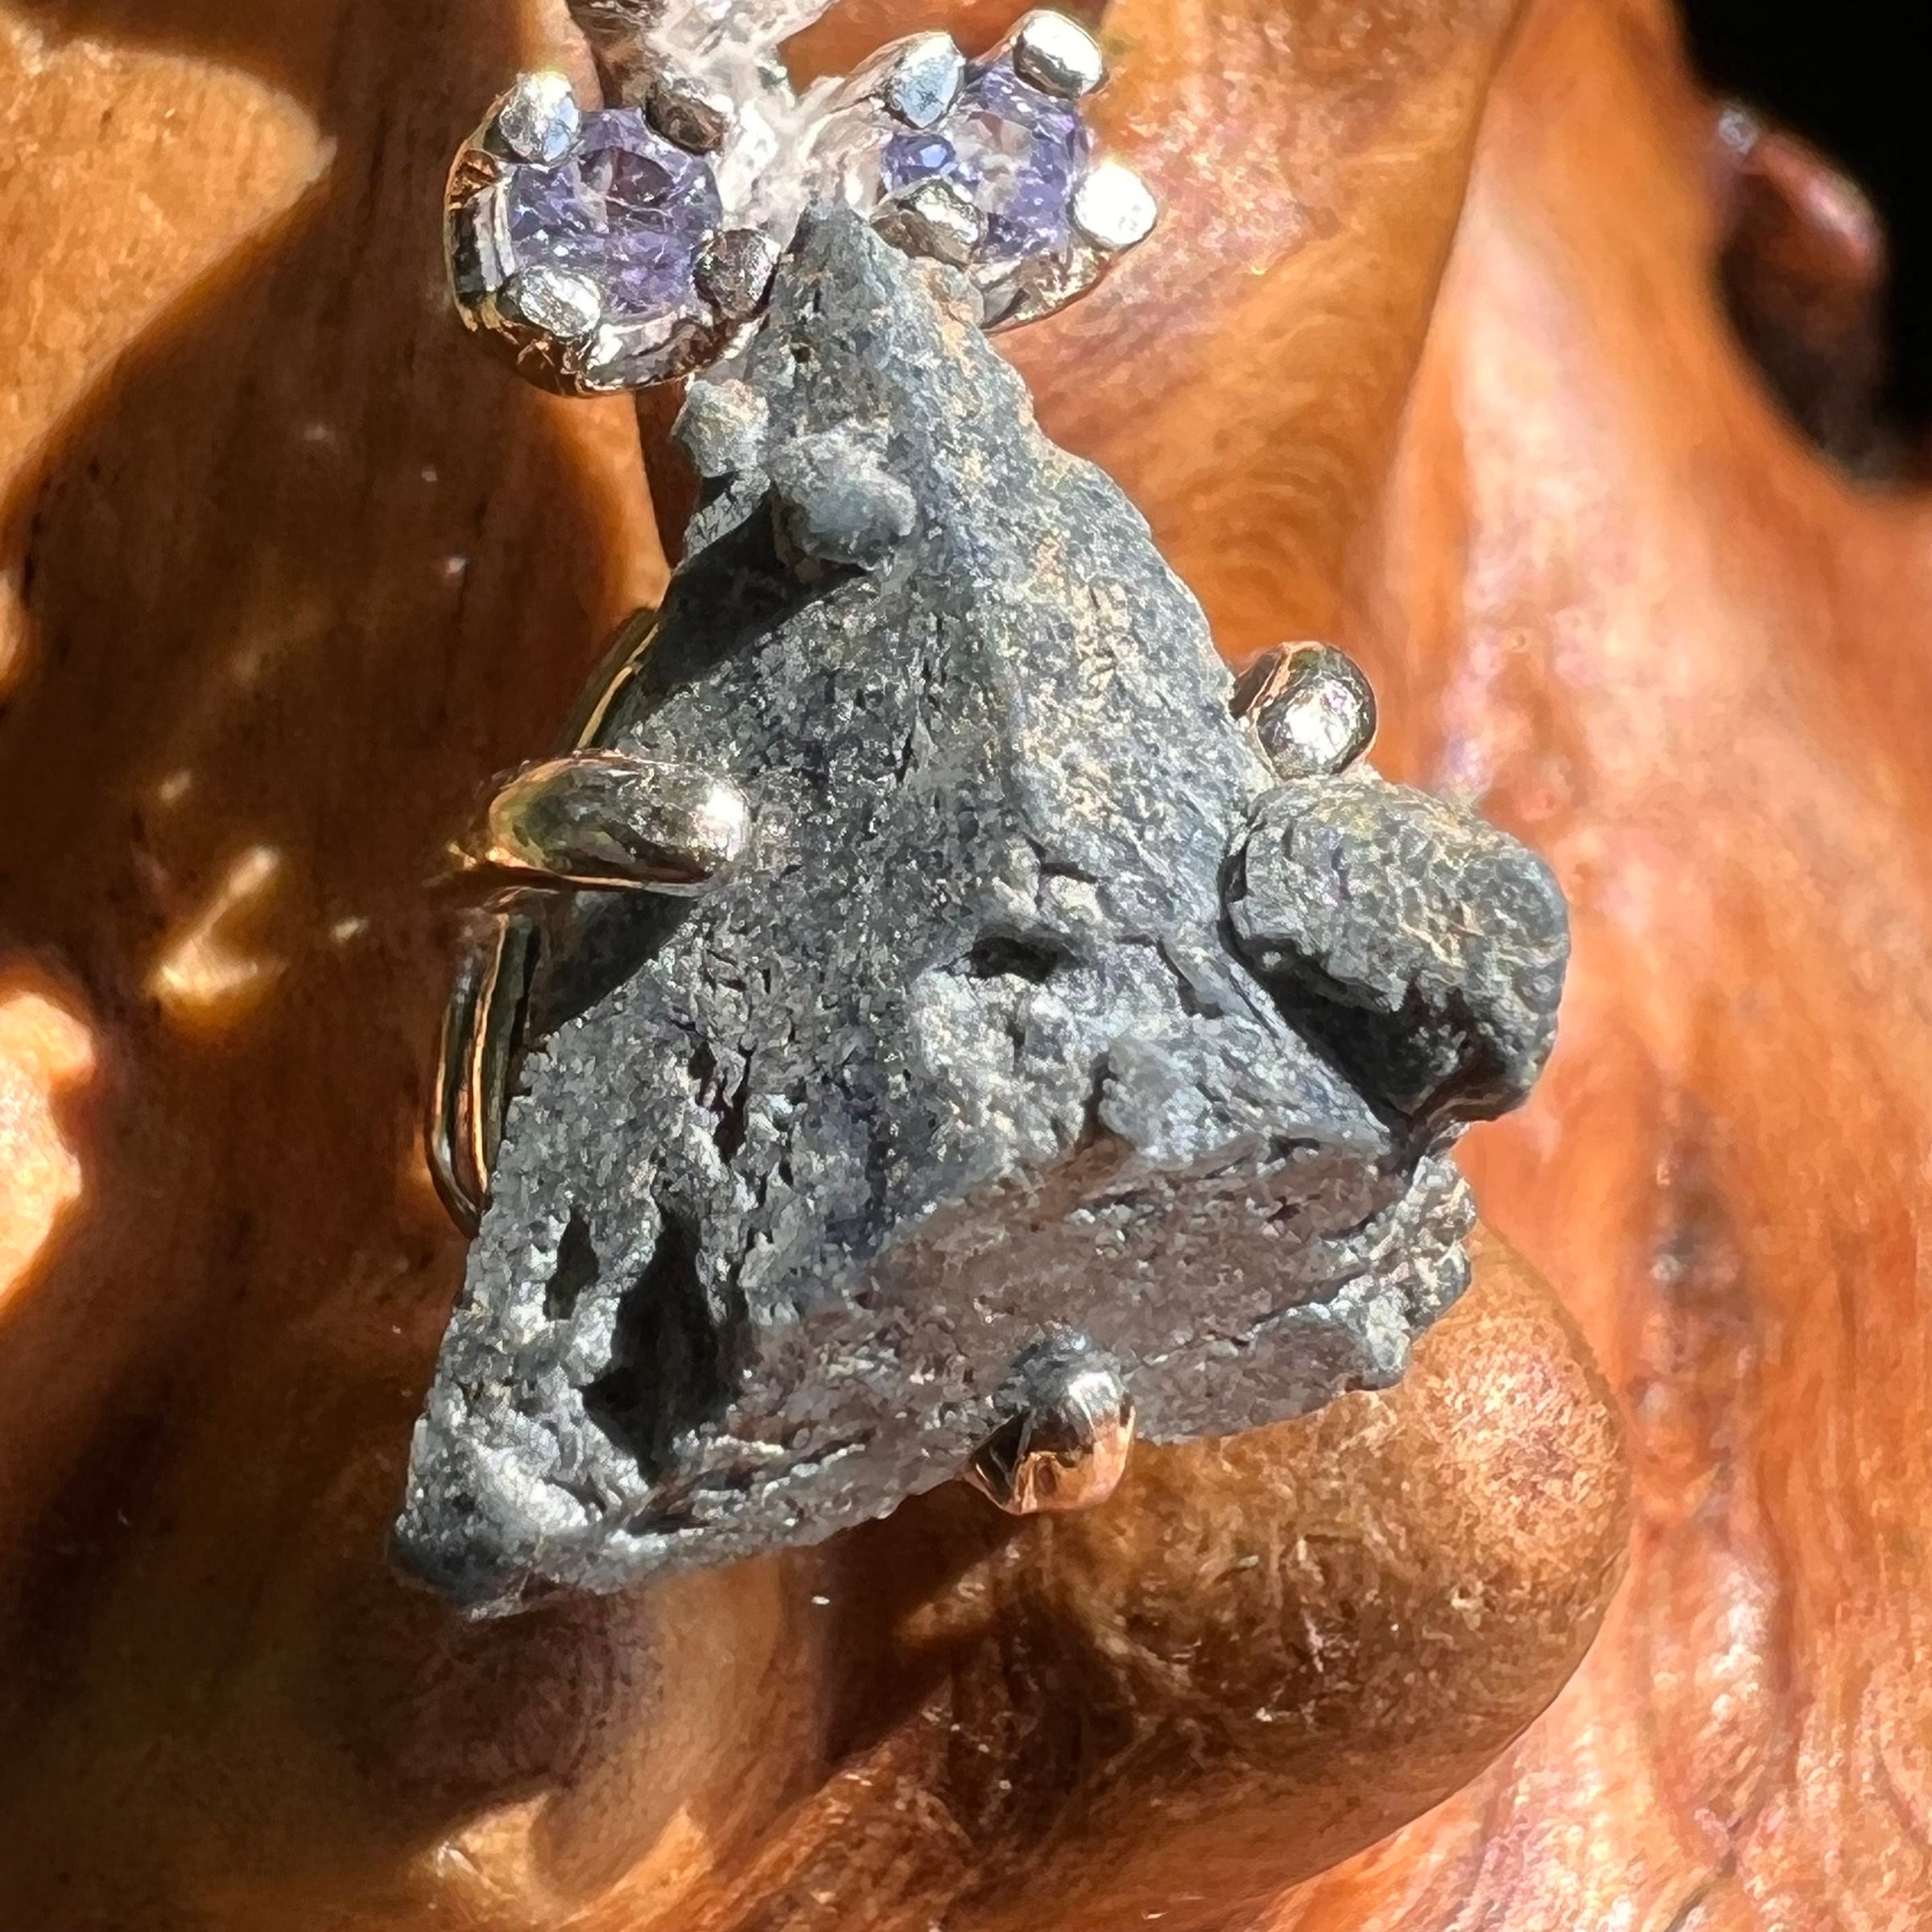 Benitoite & Tanzanite Necklace Sterling Silver #2603-Moldavite Life